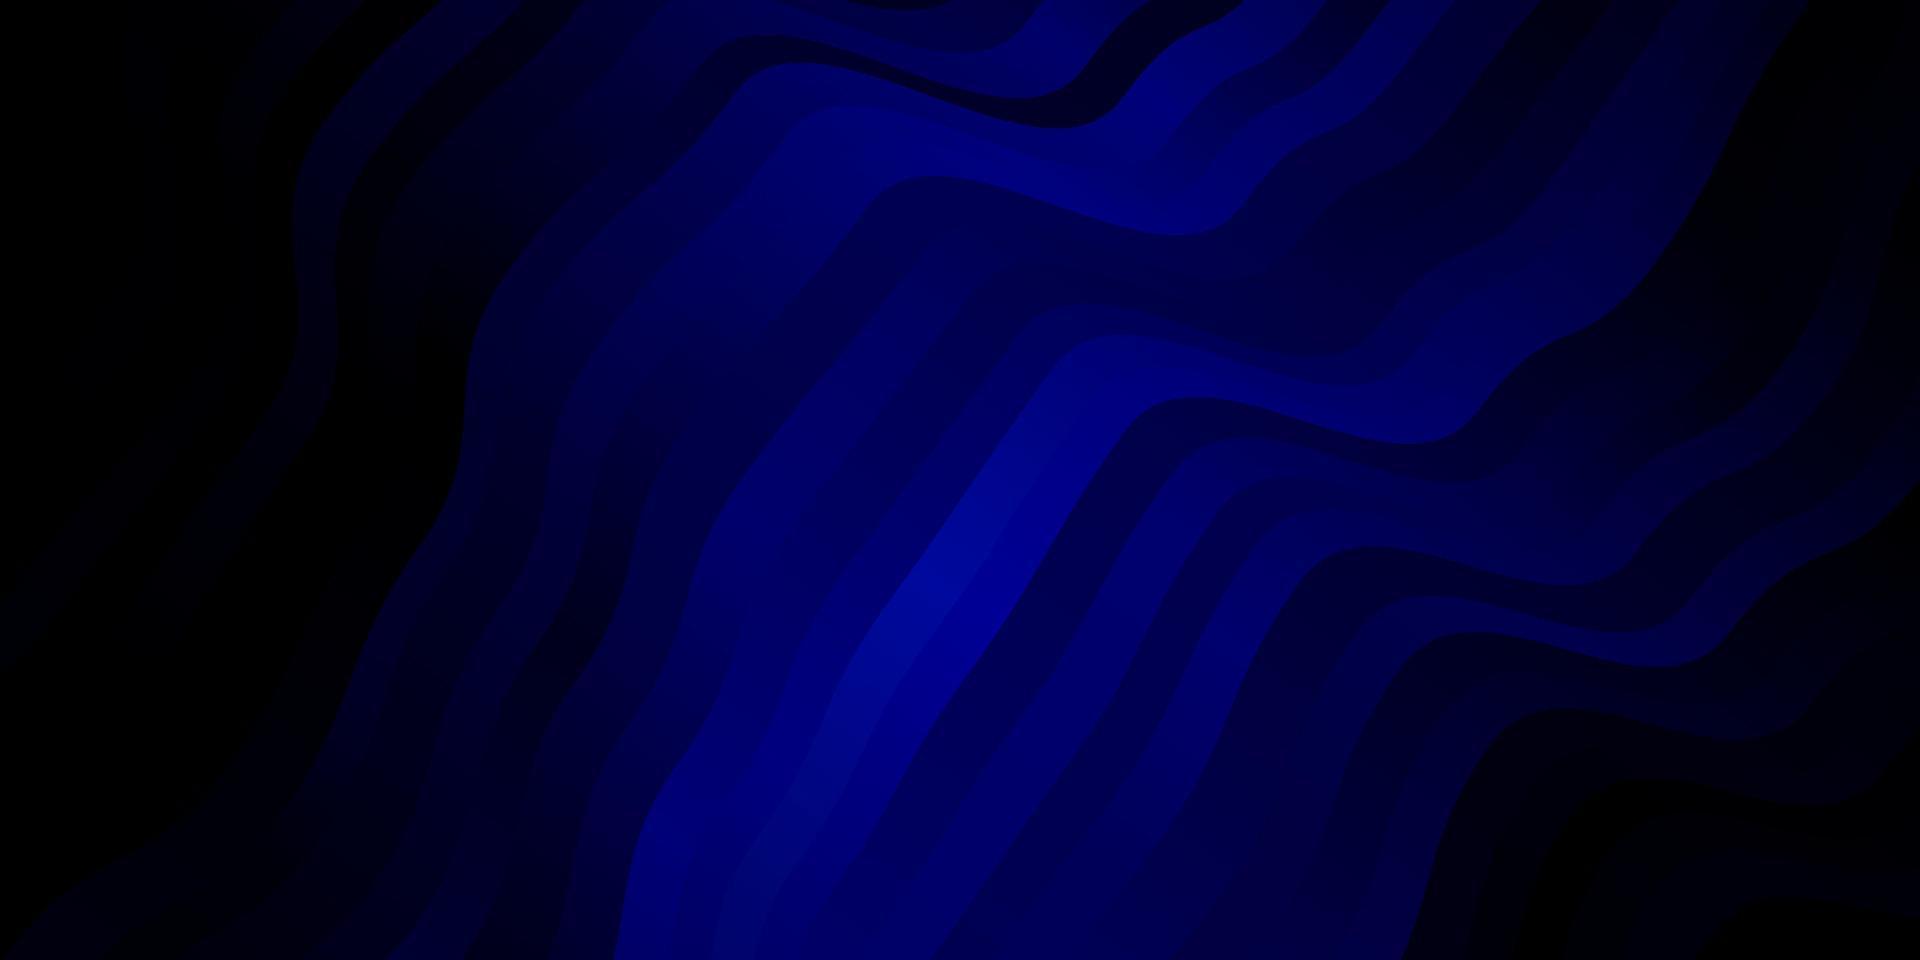 plantilla de vector azul oscuro con líneas curvas.